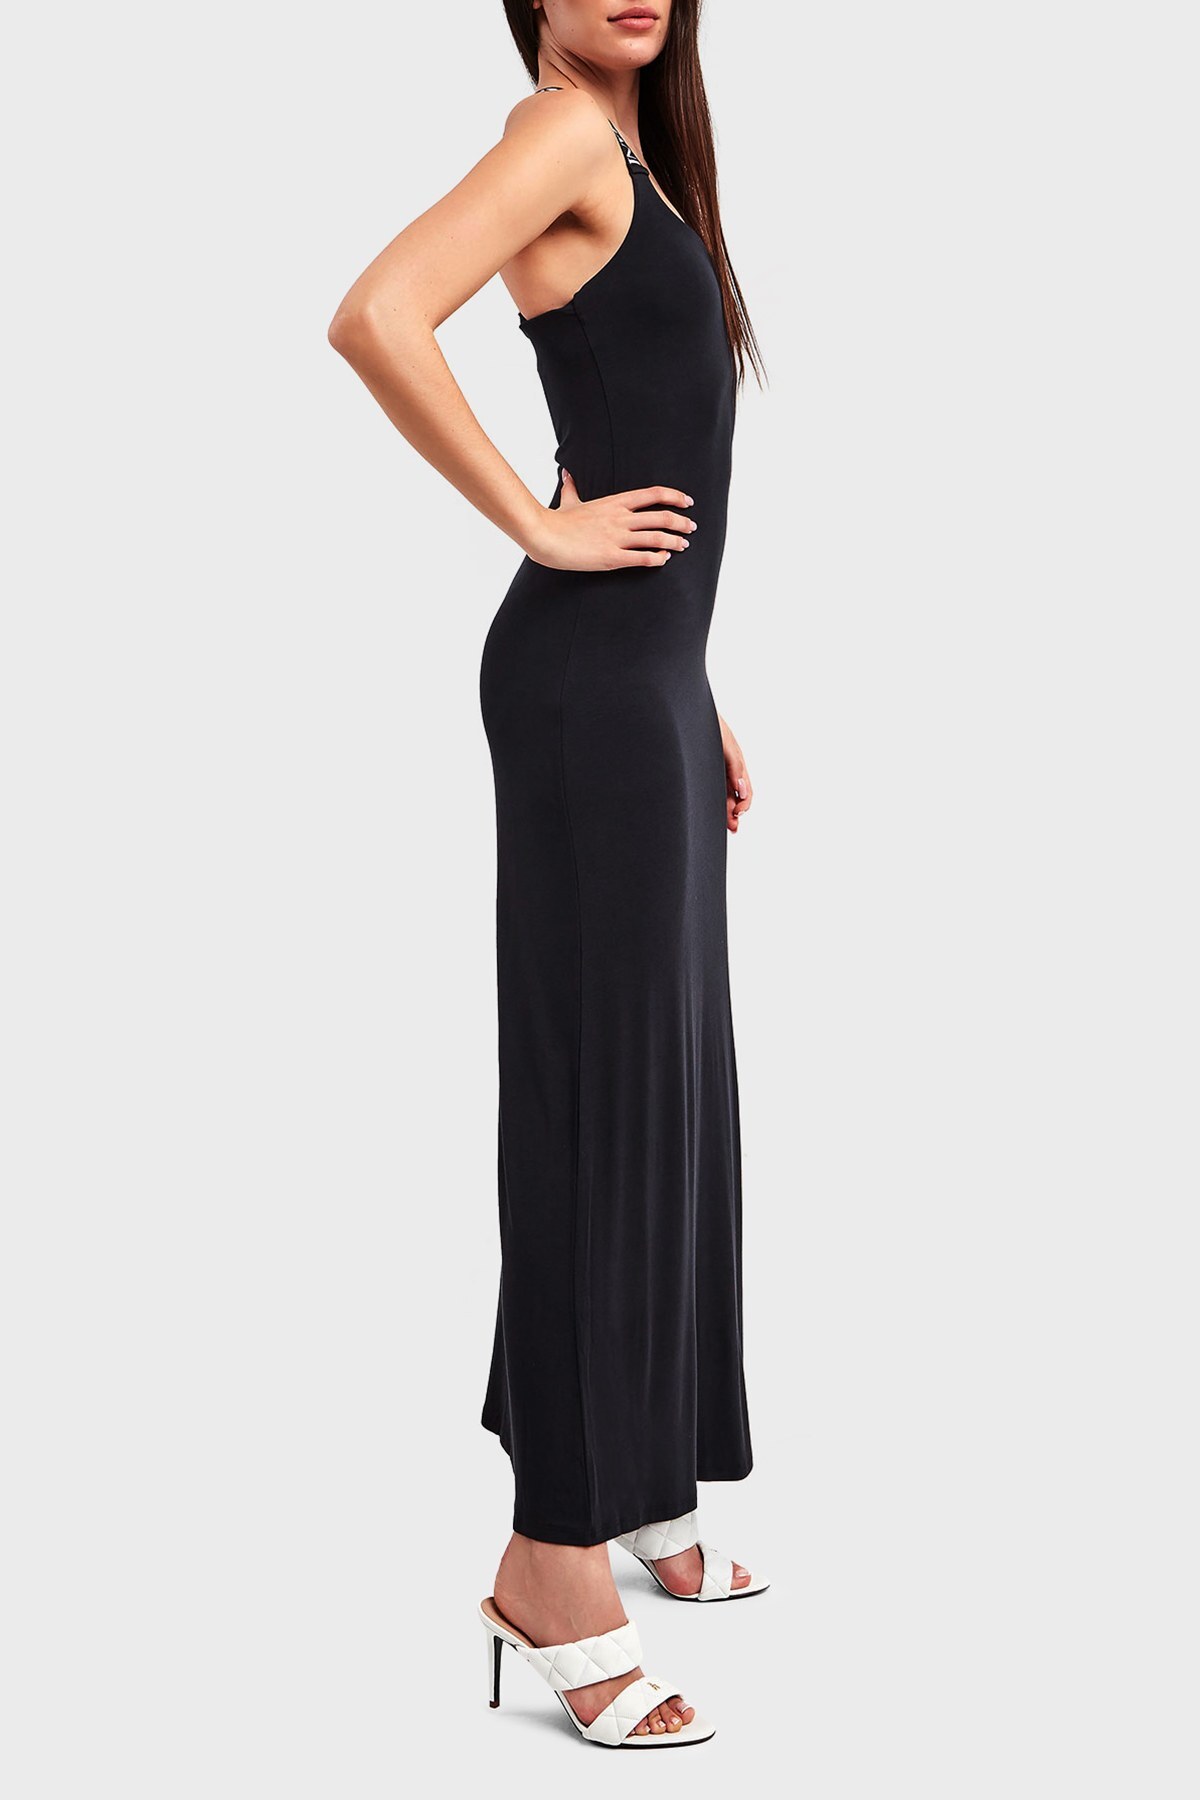 Emporio Armani Logo Detaylı Askılı İnce Uzun Bayan Elbise 262718 2R314 00020 SİYAH